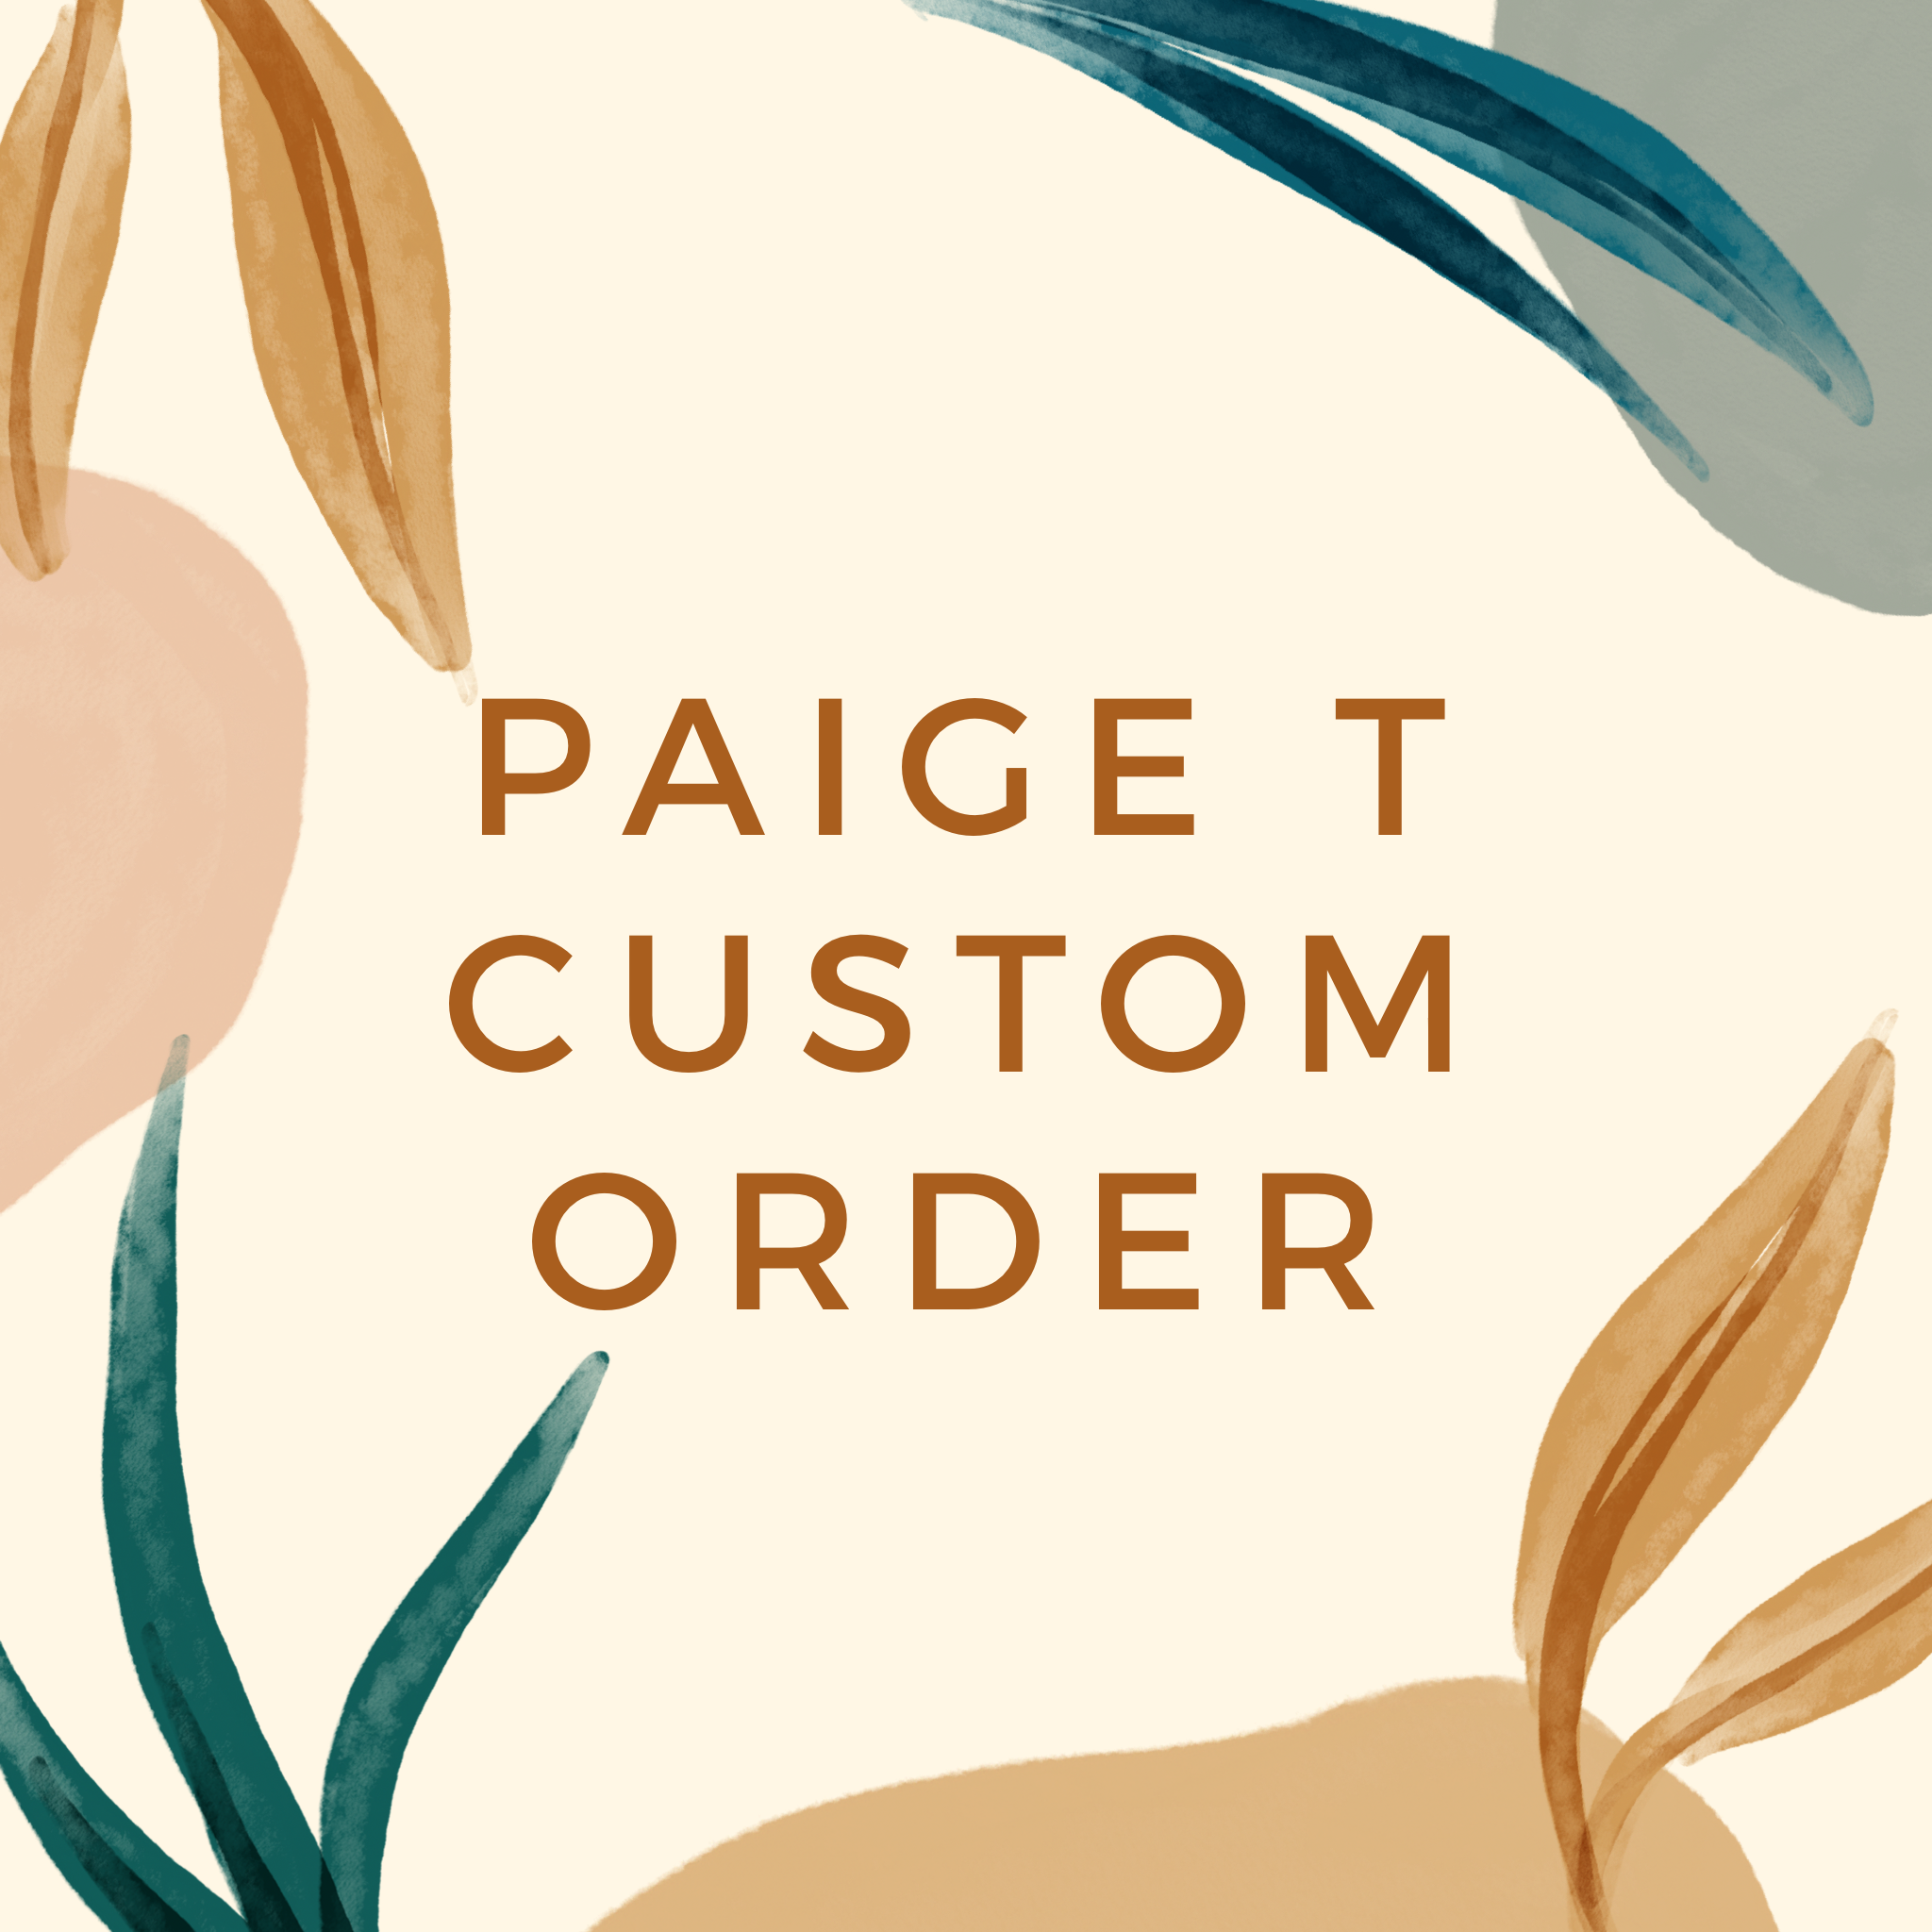 Paige T Custom Order